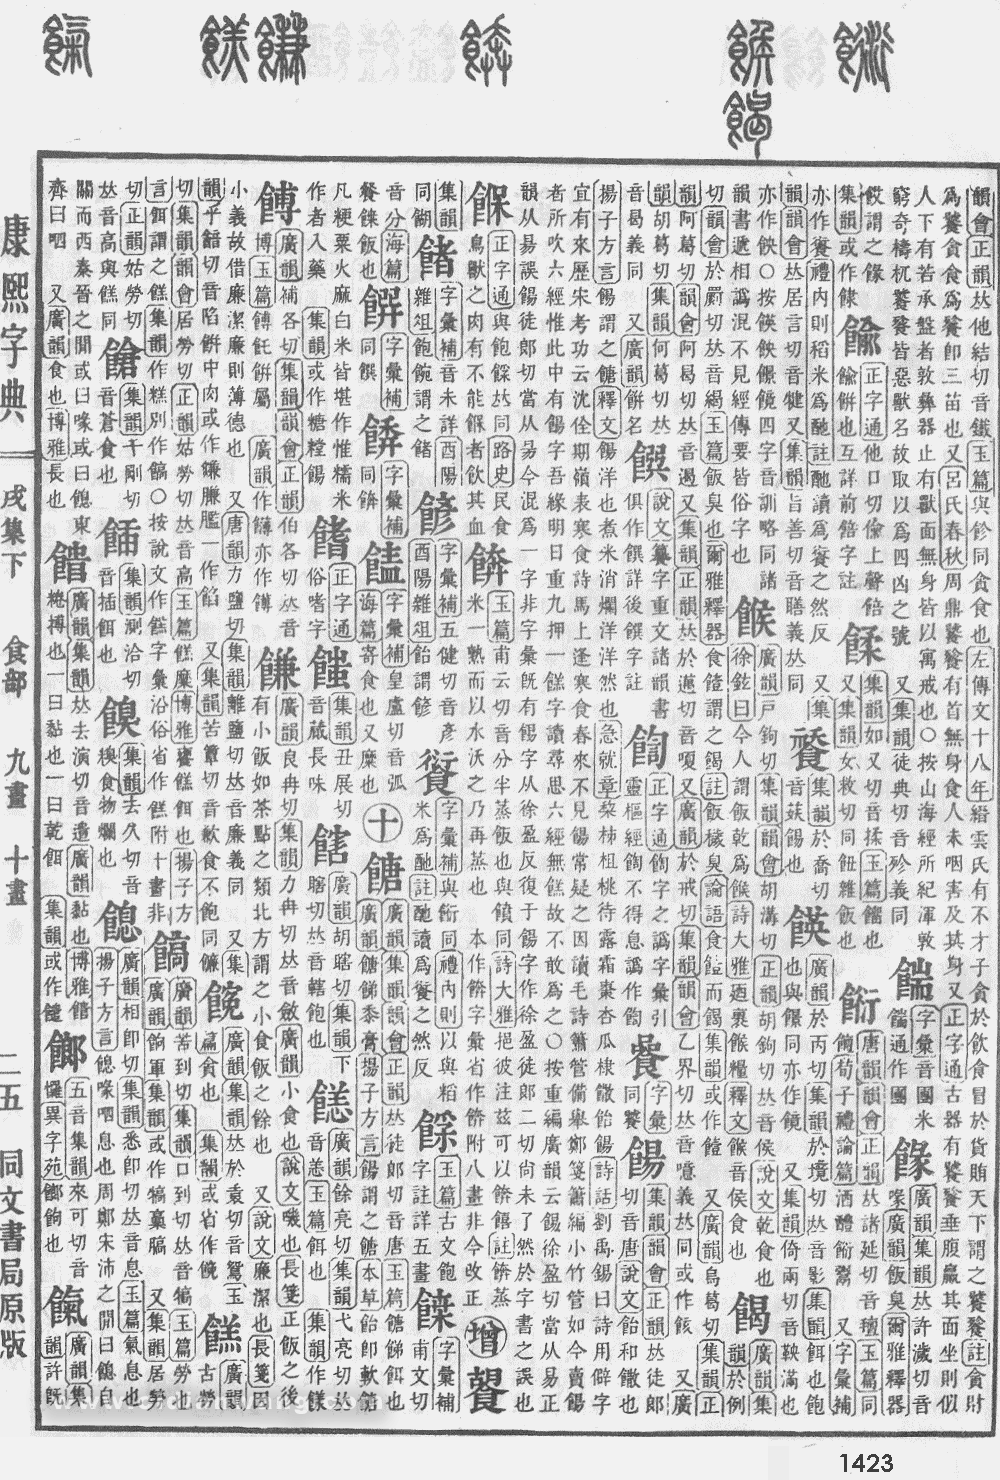 康熙字典掃描版第1423頁